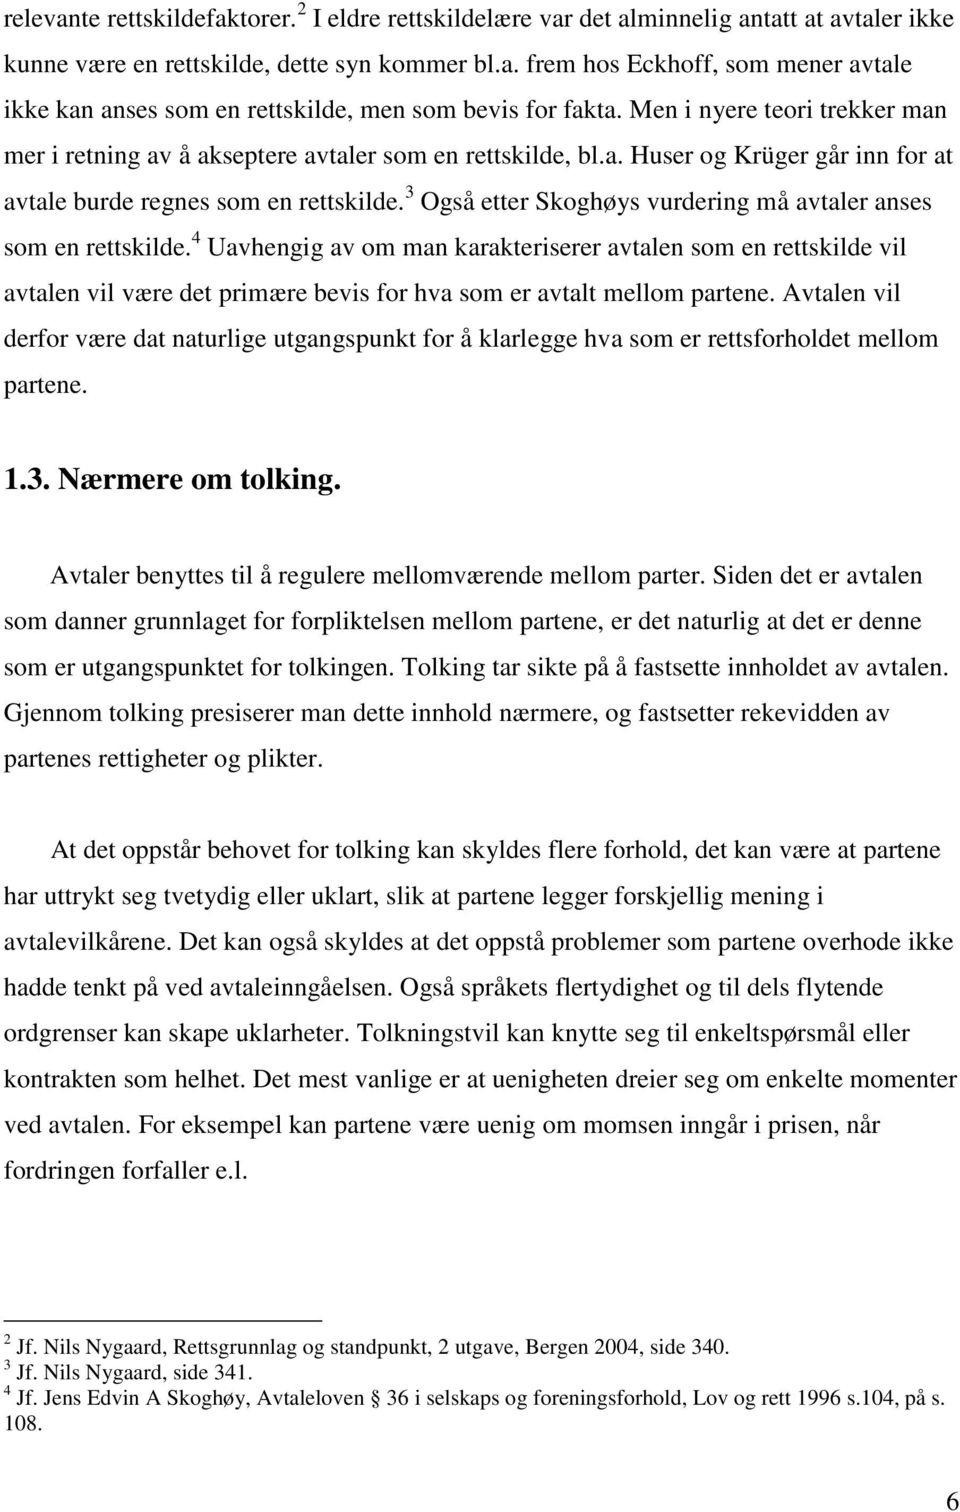 3 Også etter Skoghøys vurdering må avtaler anses som en rettskilde.